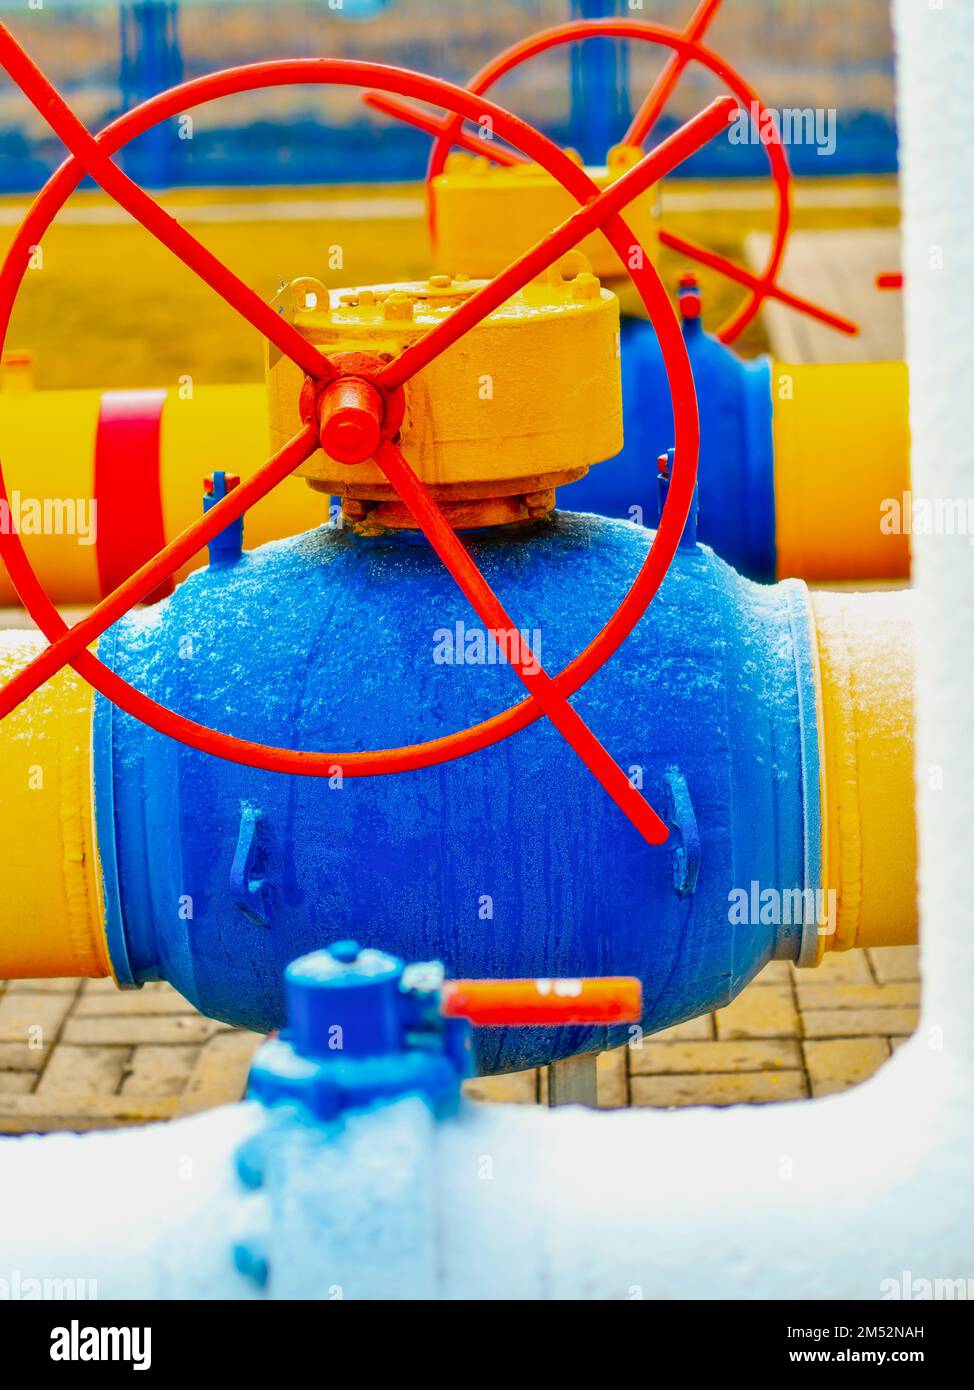 Industrieller Hintergrund. Die Gasleitung ist gelb mit zusätzlichen Anlagen, Rohren und einem Ventil zum Absperren der Gasversorgung. Stockfoto